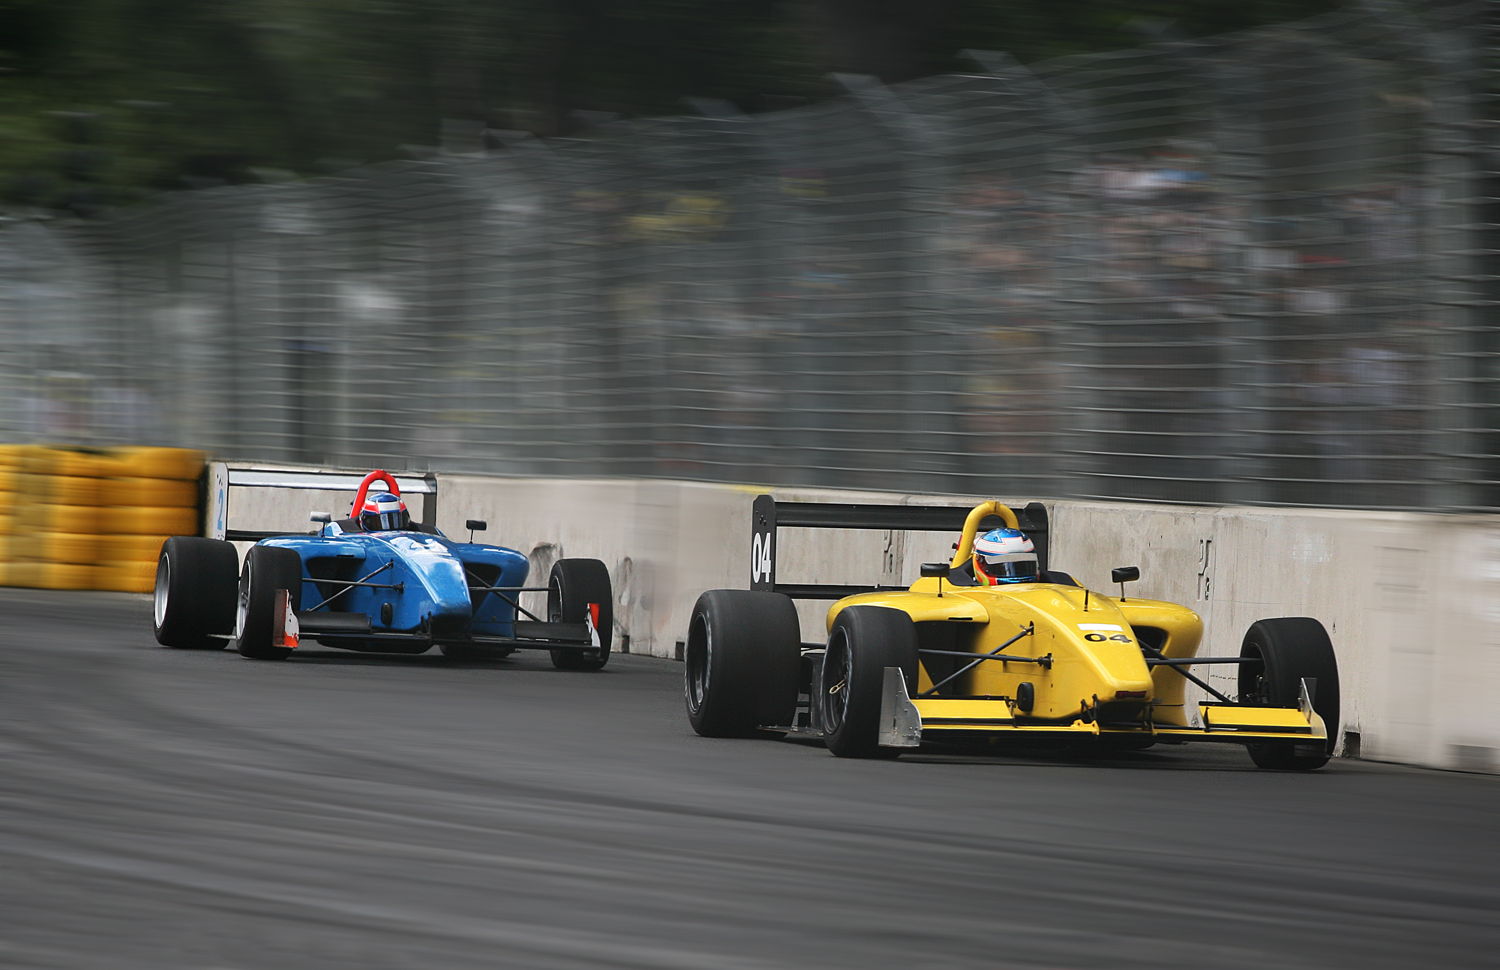 Italian Grand Prix 2018. Foto: Cortesía de Inspirato